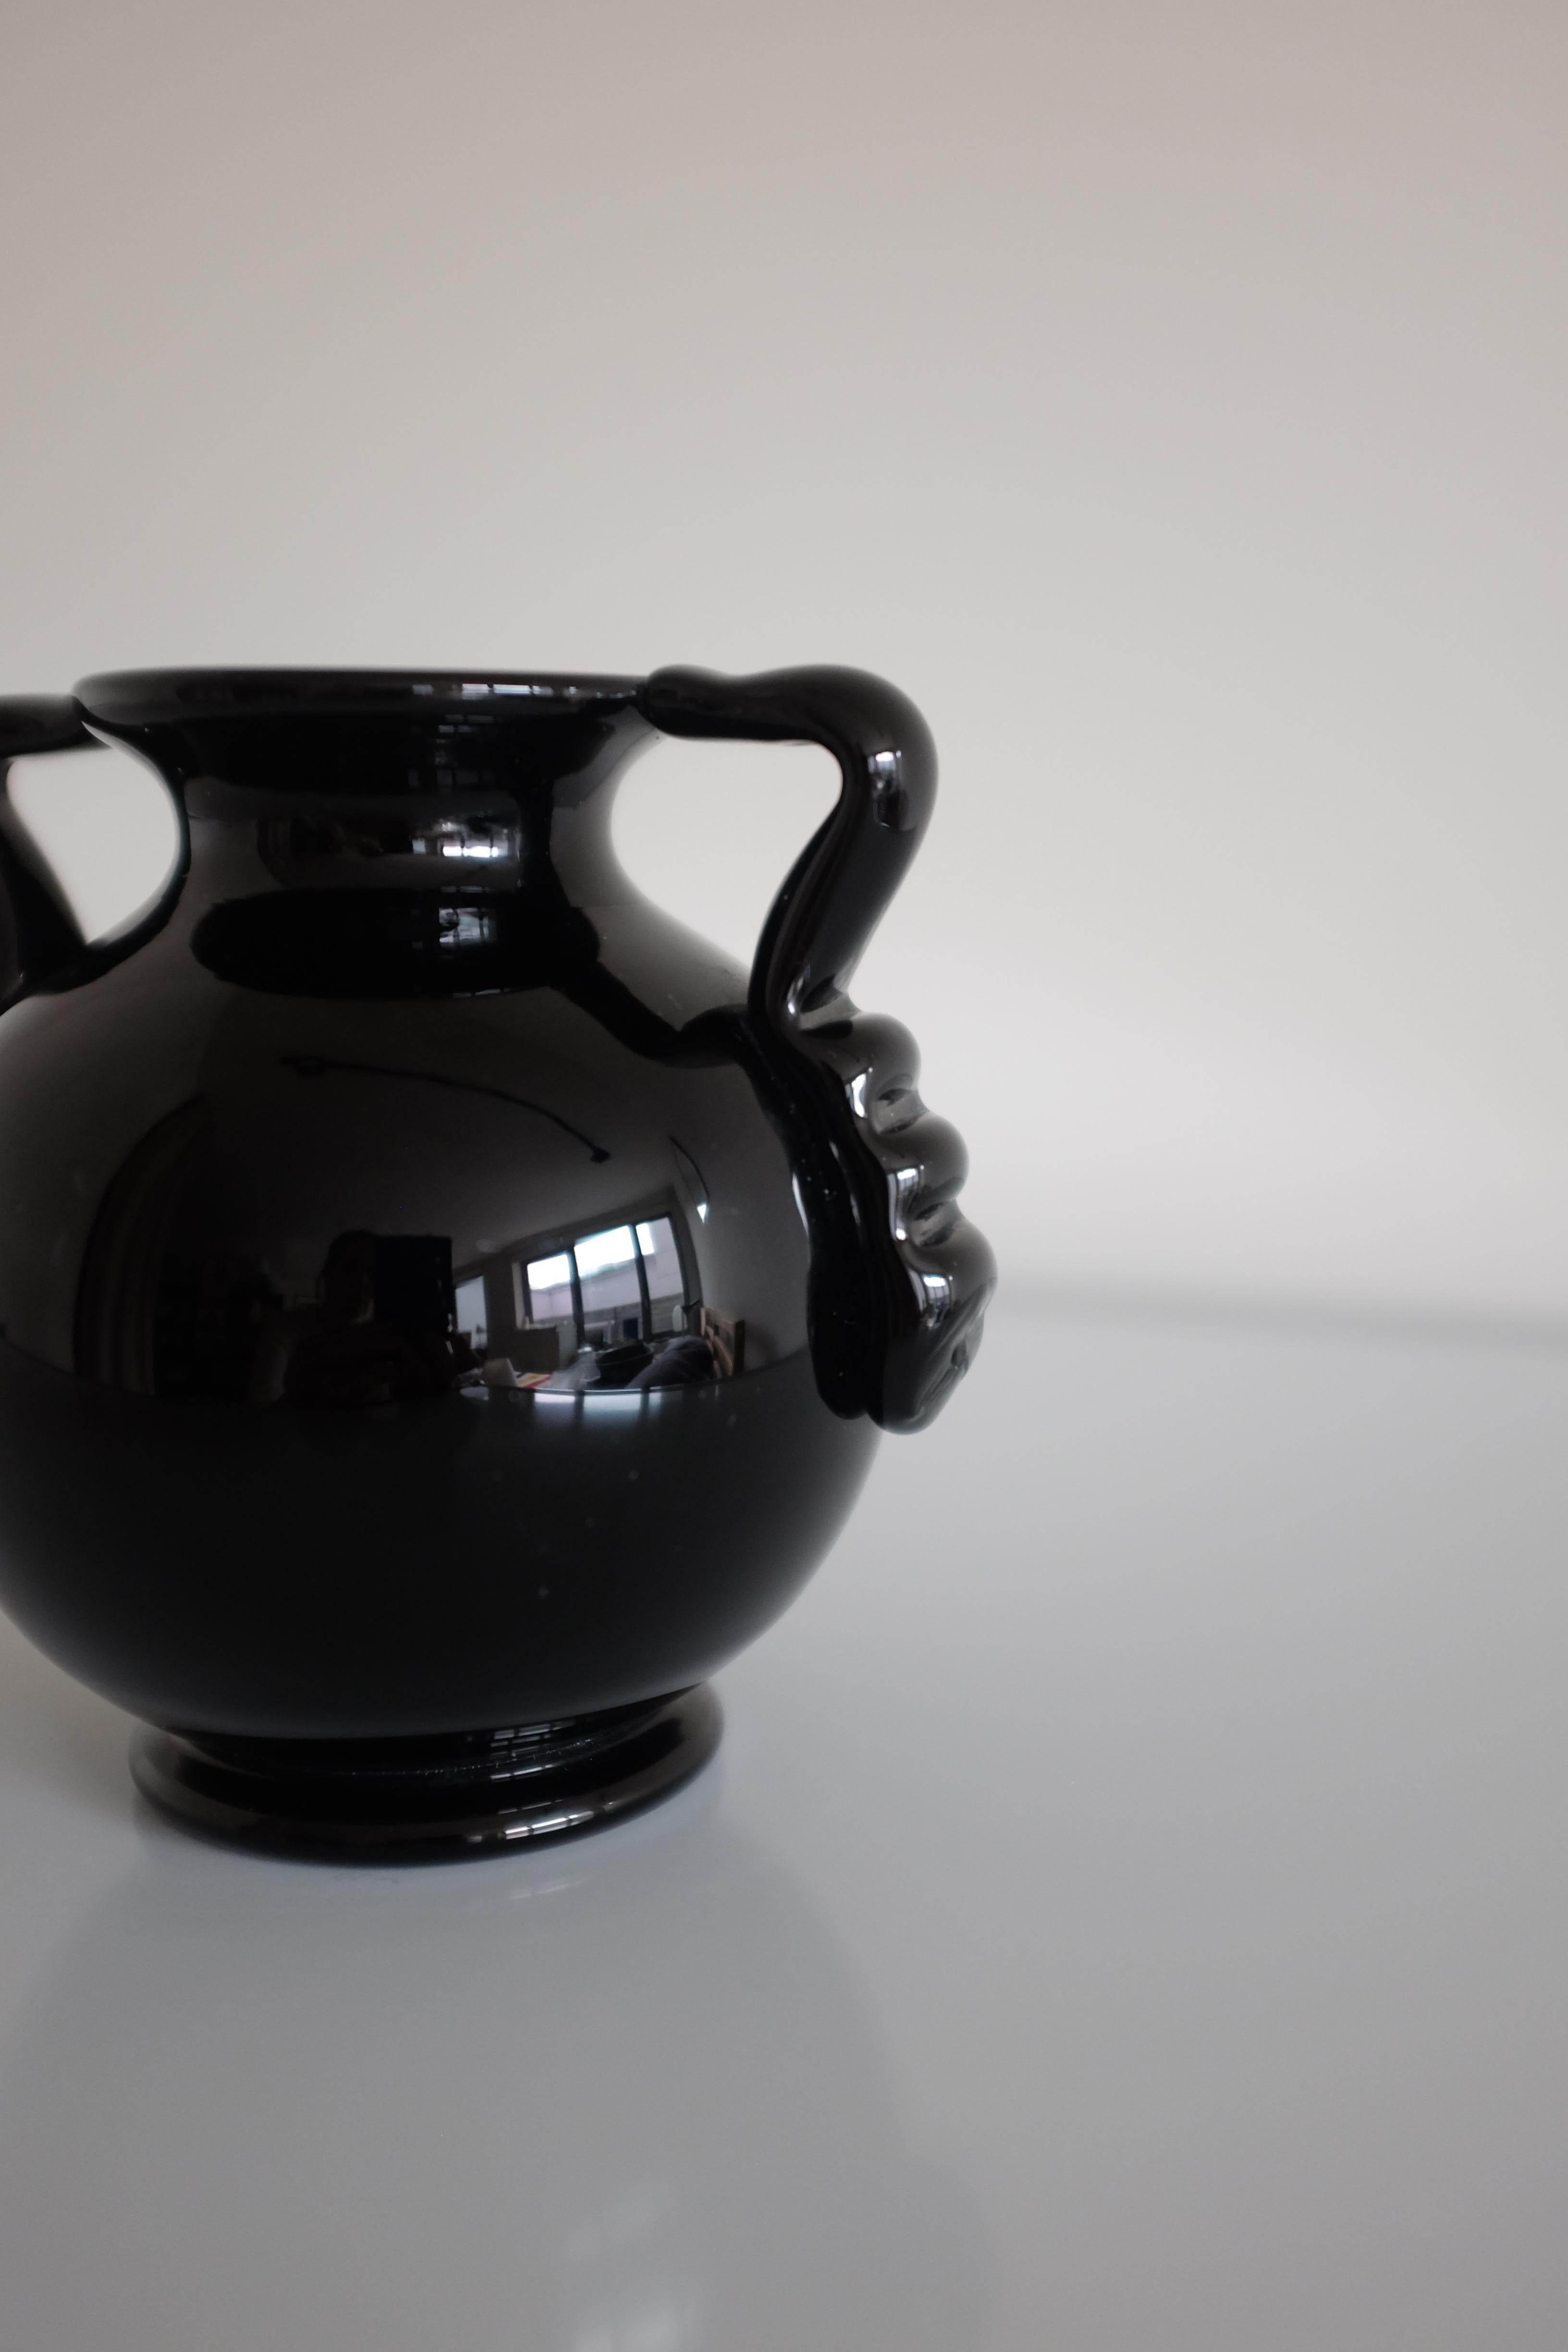 Charmant vase en verre suédois du milieu du siècle. Magnifiques détails ondulés sur les poignées avec un fond rond, produit vers les années 1930. Usures dues à l'âge et en bon état.

Dimensions : H 5 in. x W 5 in. x D 4 in.